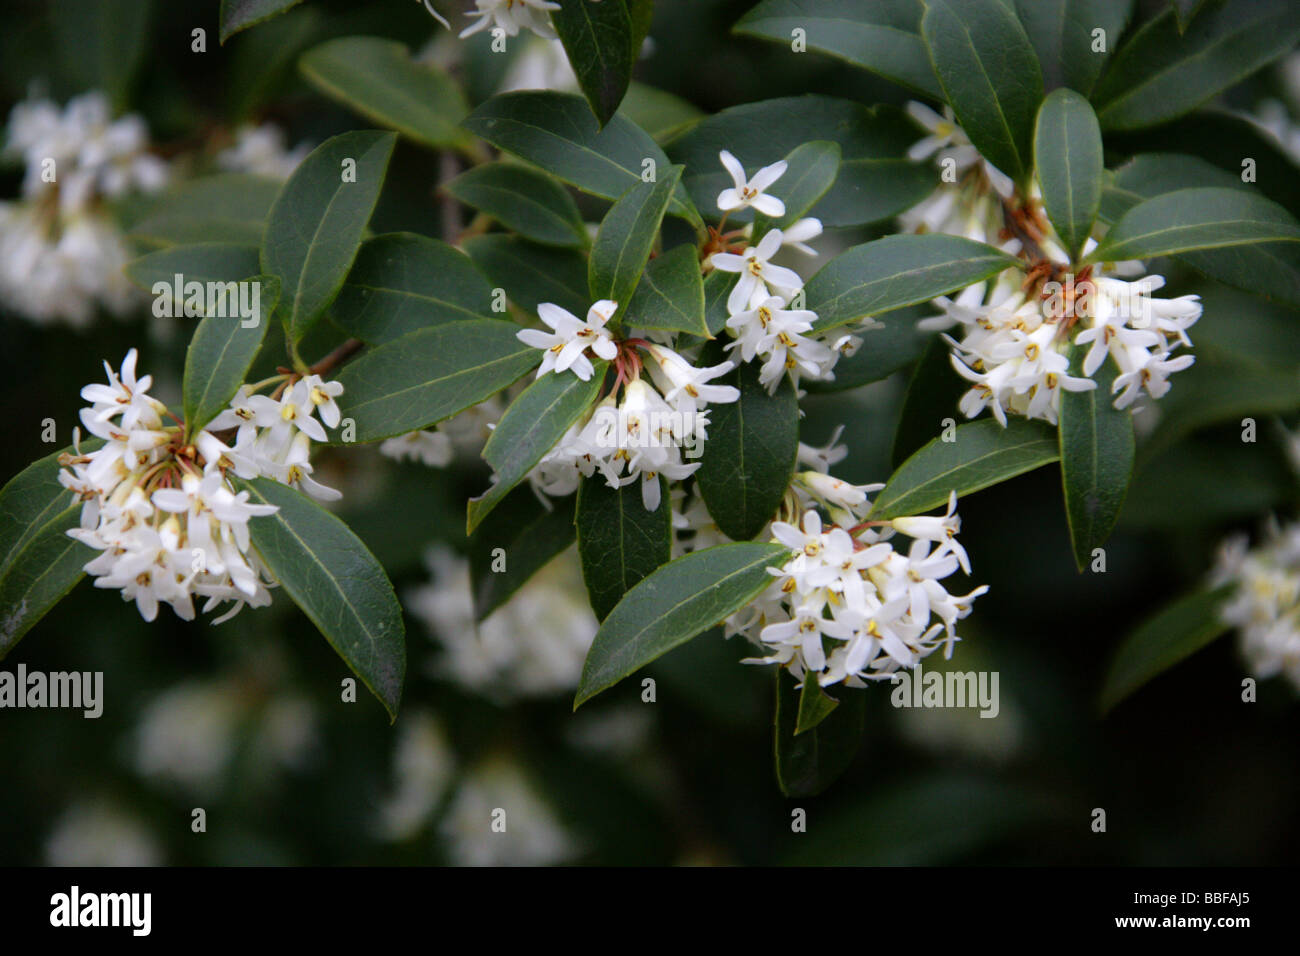 Delavay's Osmanthus, Osmanthus delavayi, Oleaceae, South West China Stock Photo